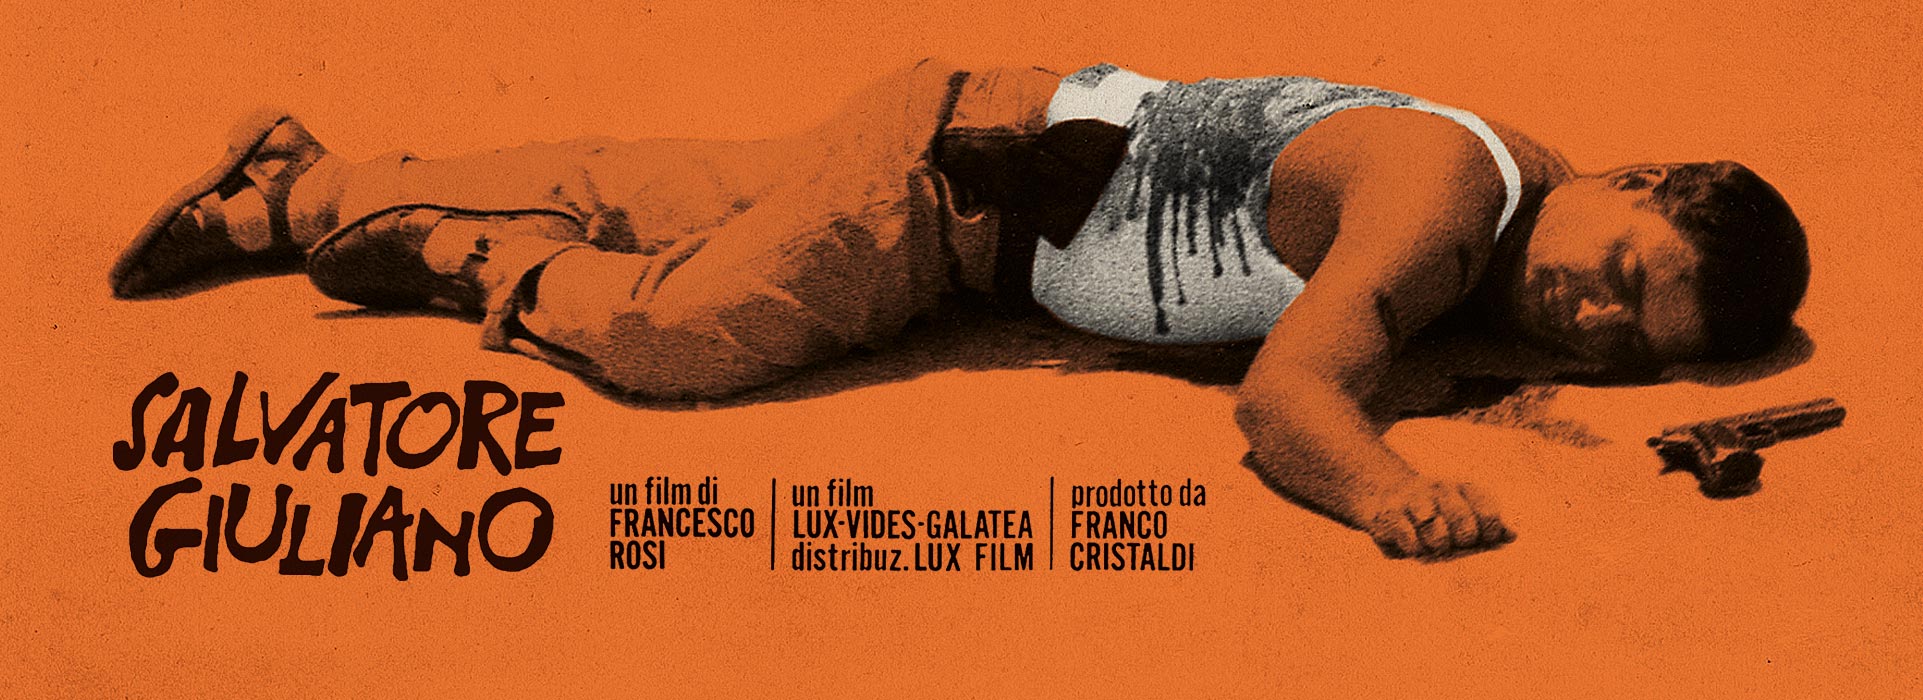 Cristaldi Film, Salvatore Giuliano